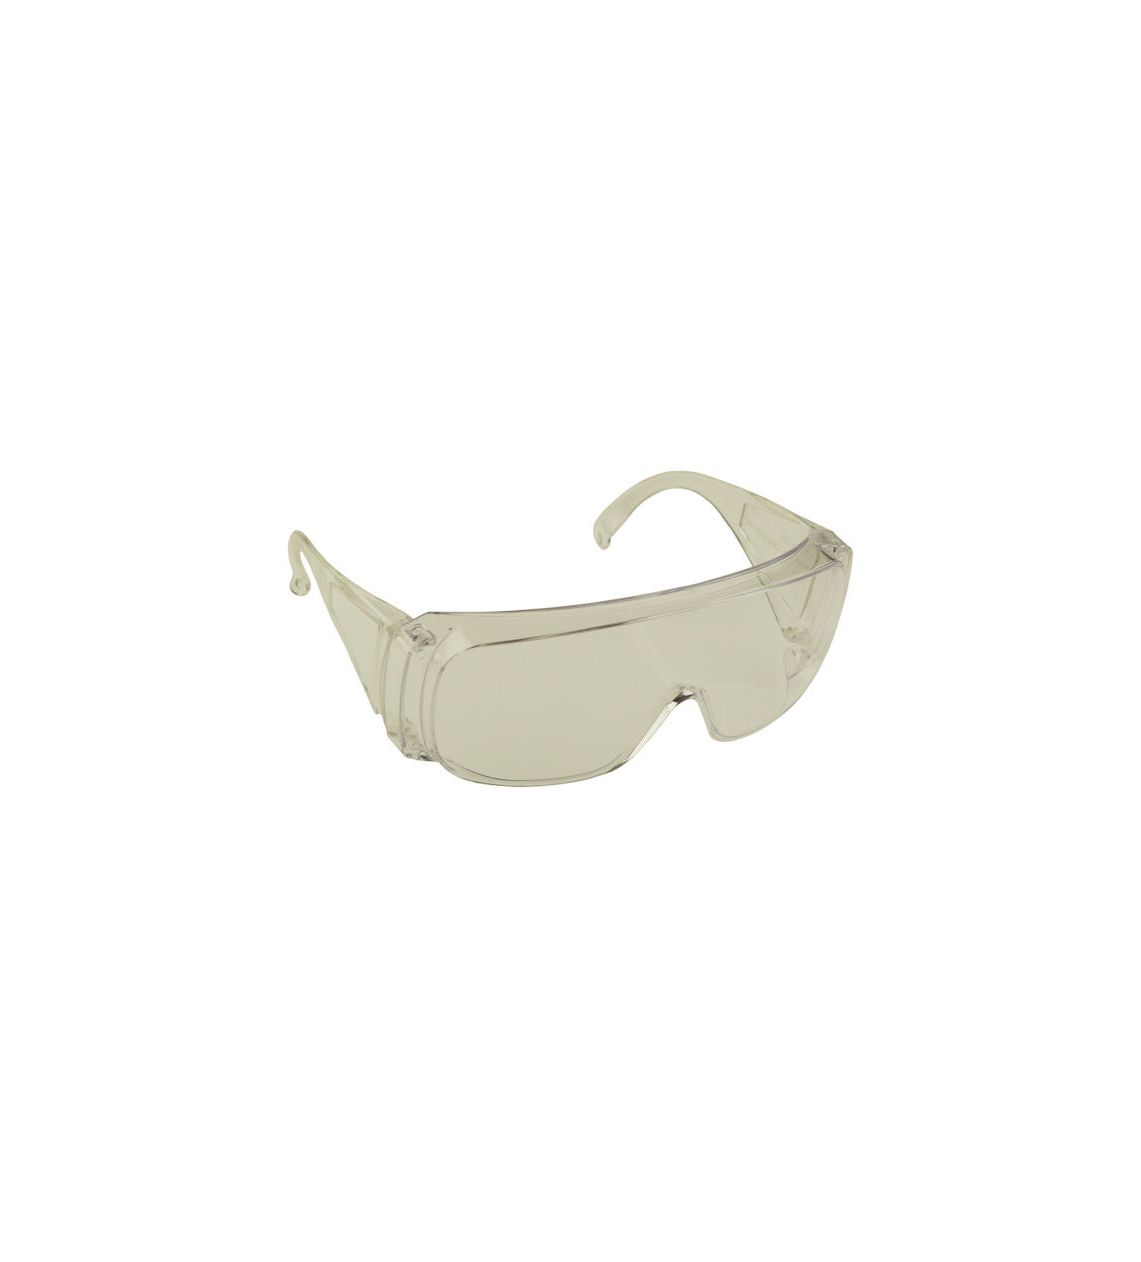 Überbrille Overspec/F. Farblos mit Kunststoffscheibe.